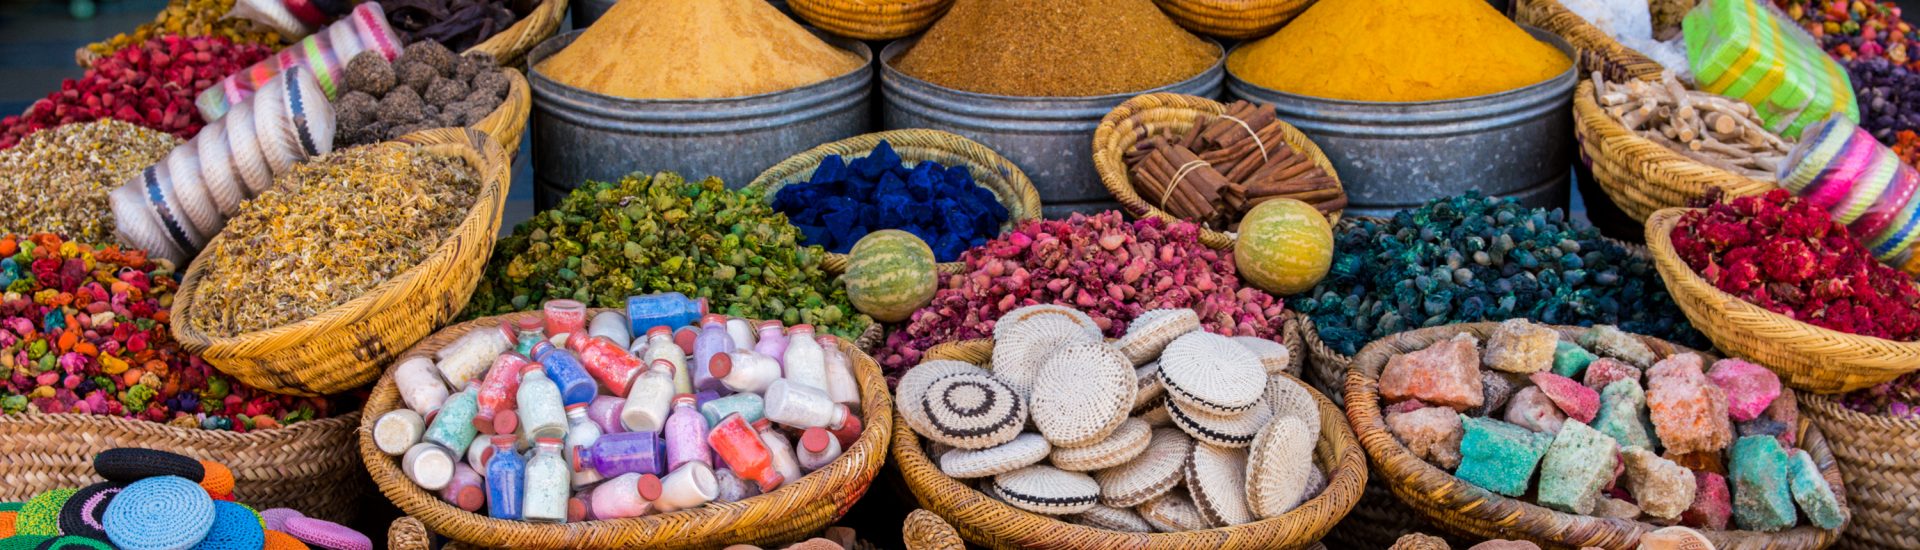 Markt in Marokko